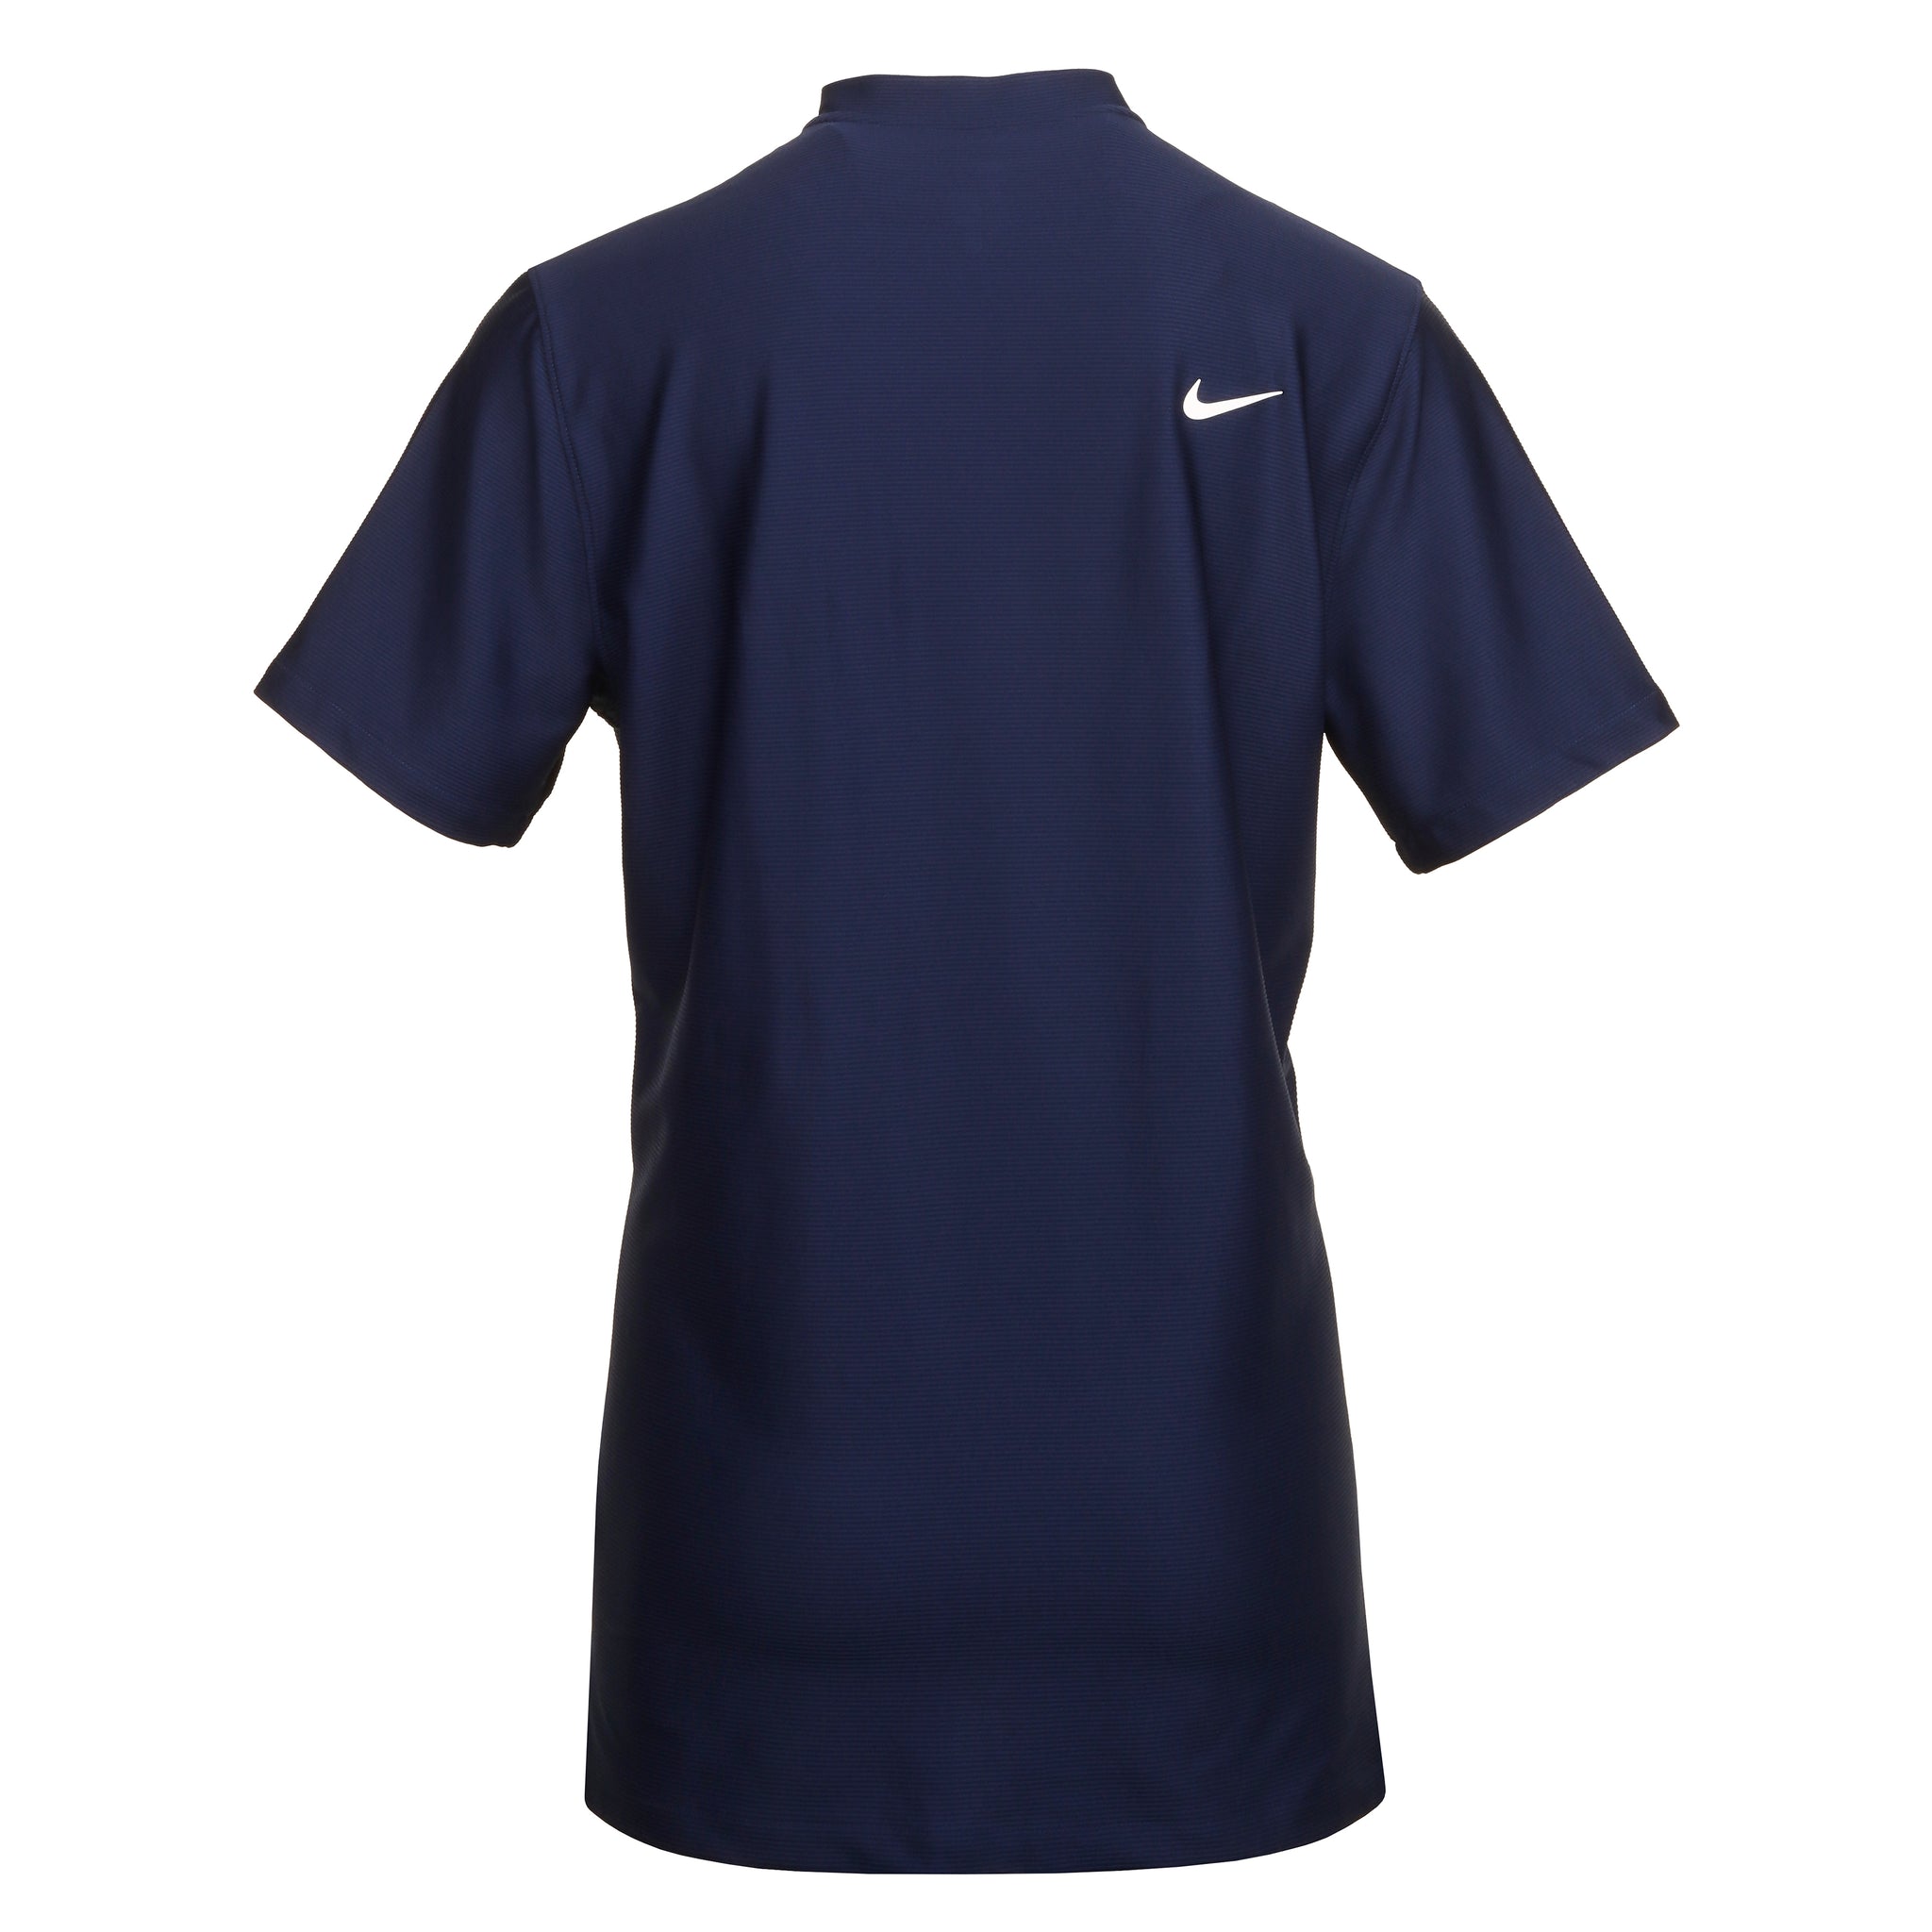 nike-golf-dri-fit-tour-texture-shirt-fj7035-410-midnight-navy